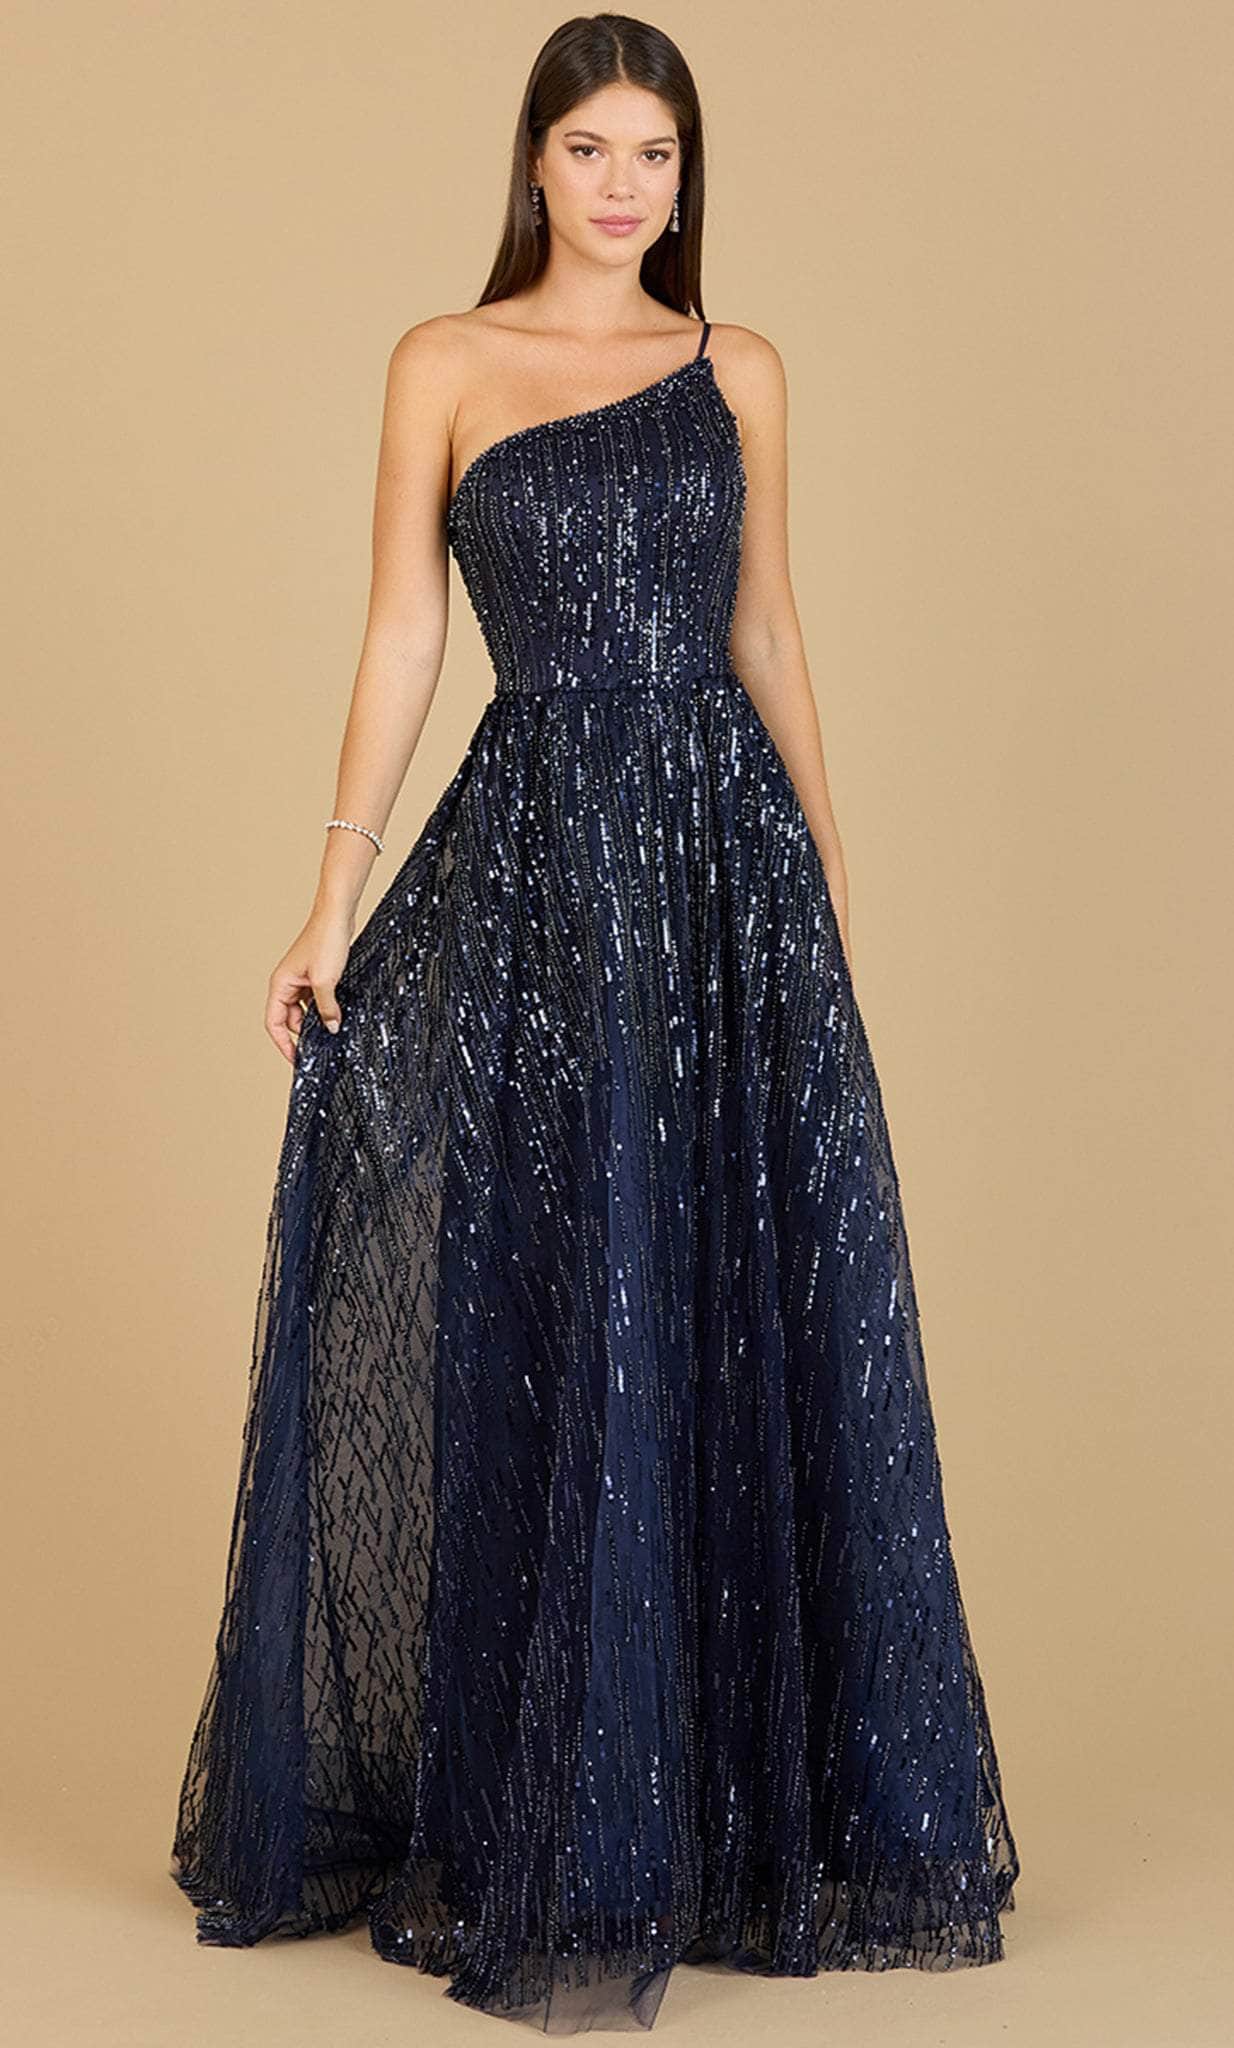 Image of Lara Dresses 29194 - One Shoulder Ornate Evening Dress